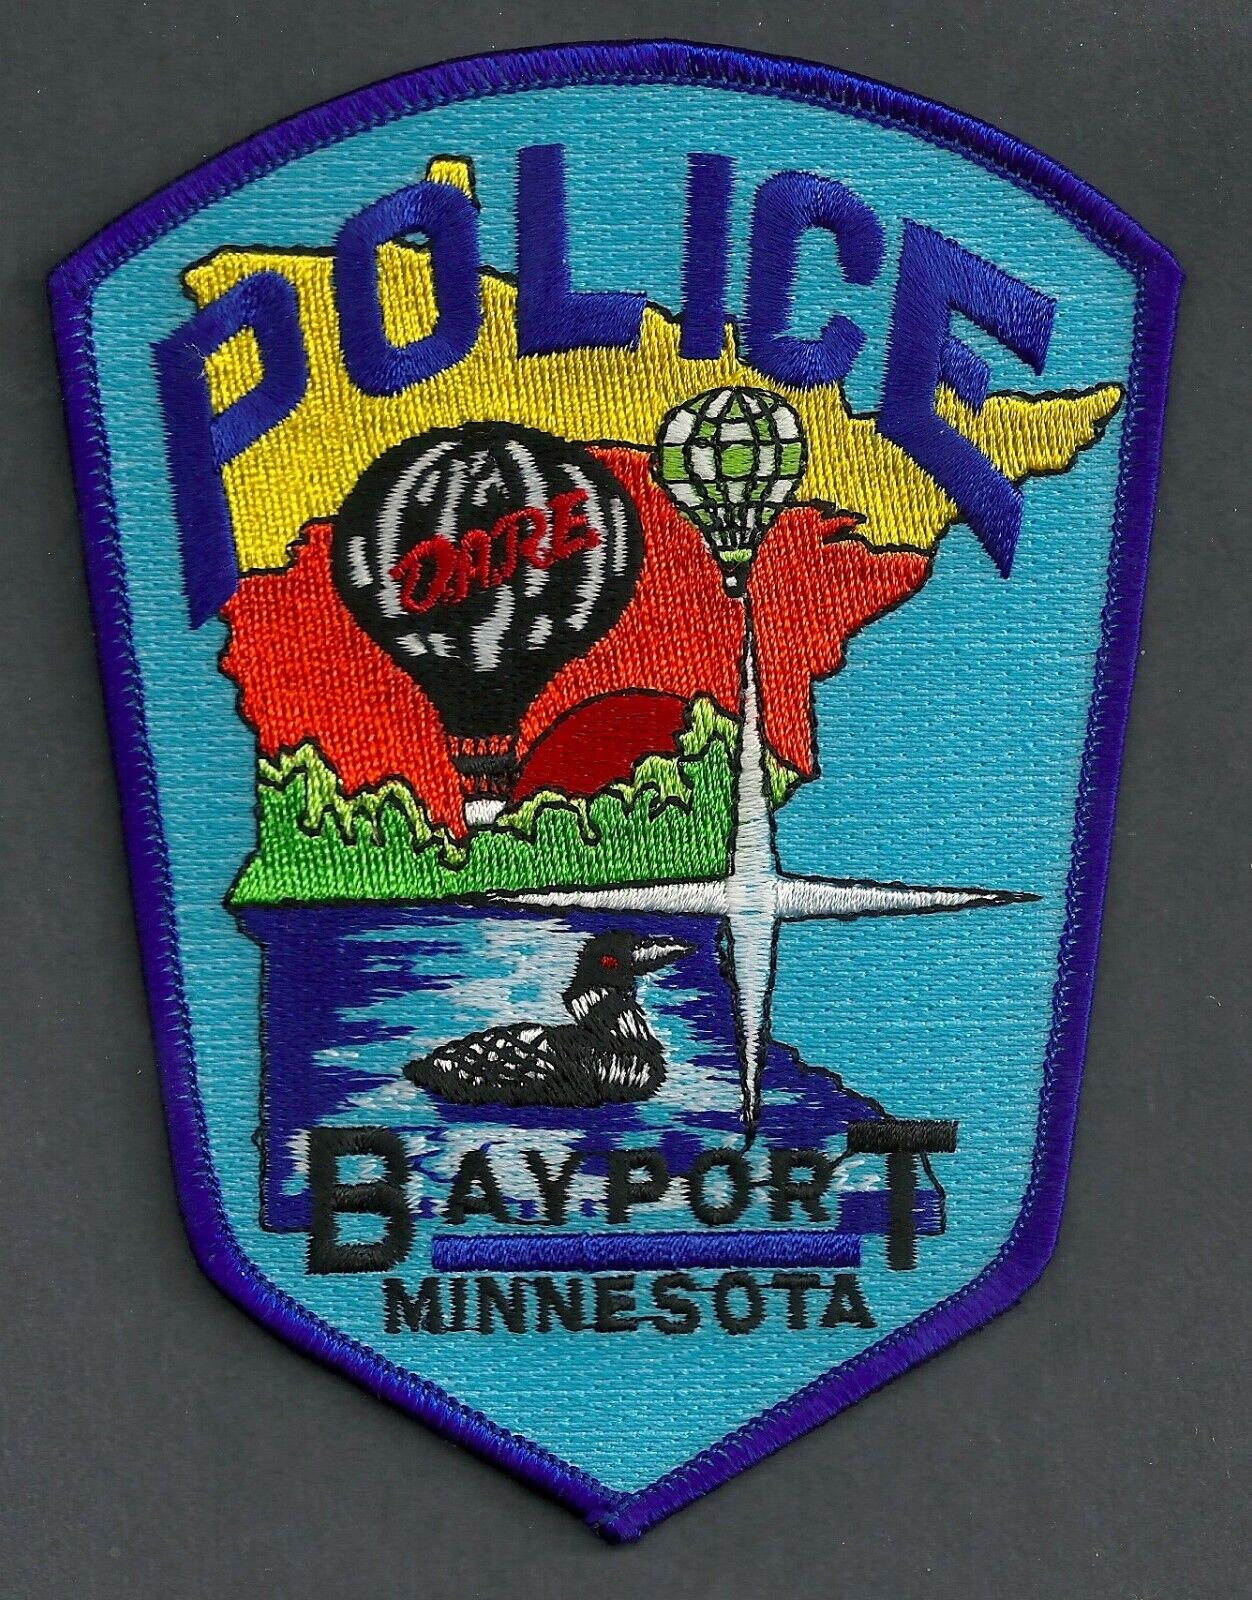 BAYPORT MINNESOTA POLICE SHOULDER PATCH